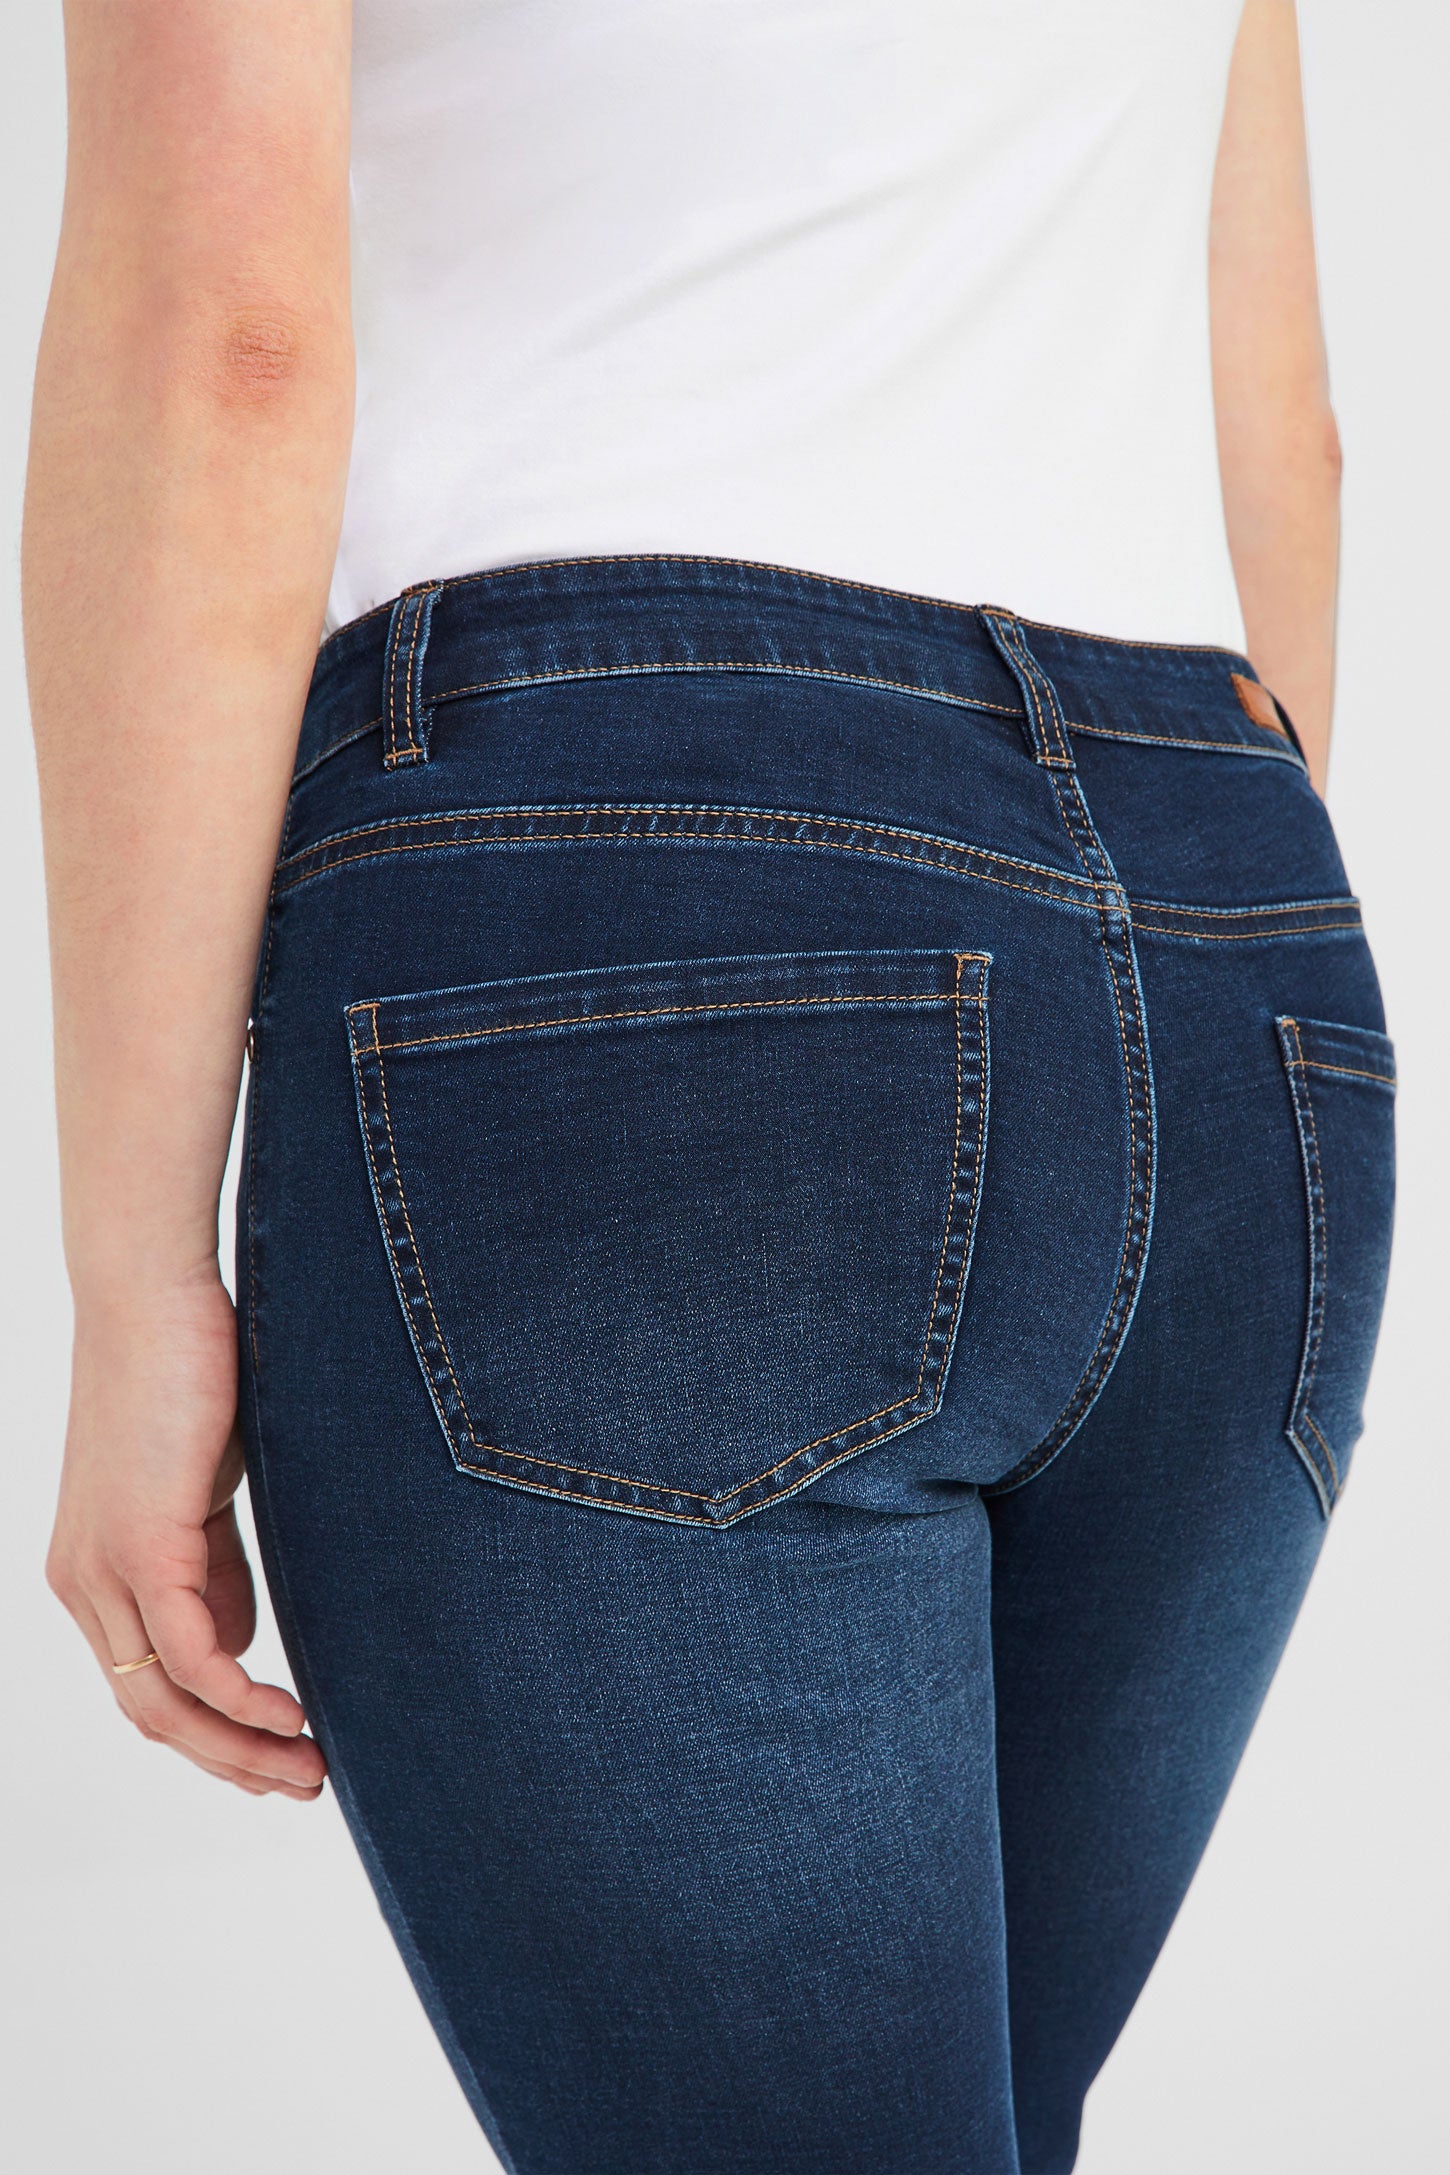 Capri 5 poches en jeans - Femme && BLEU FONCÉ